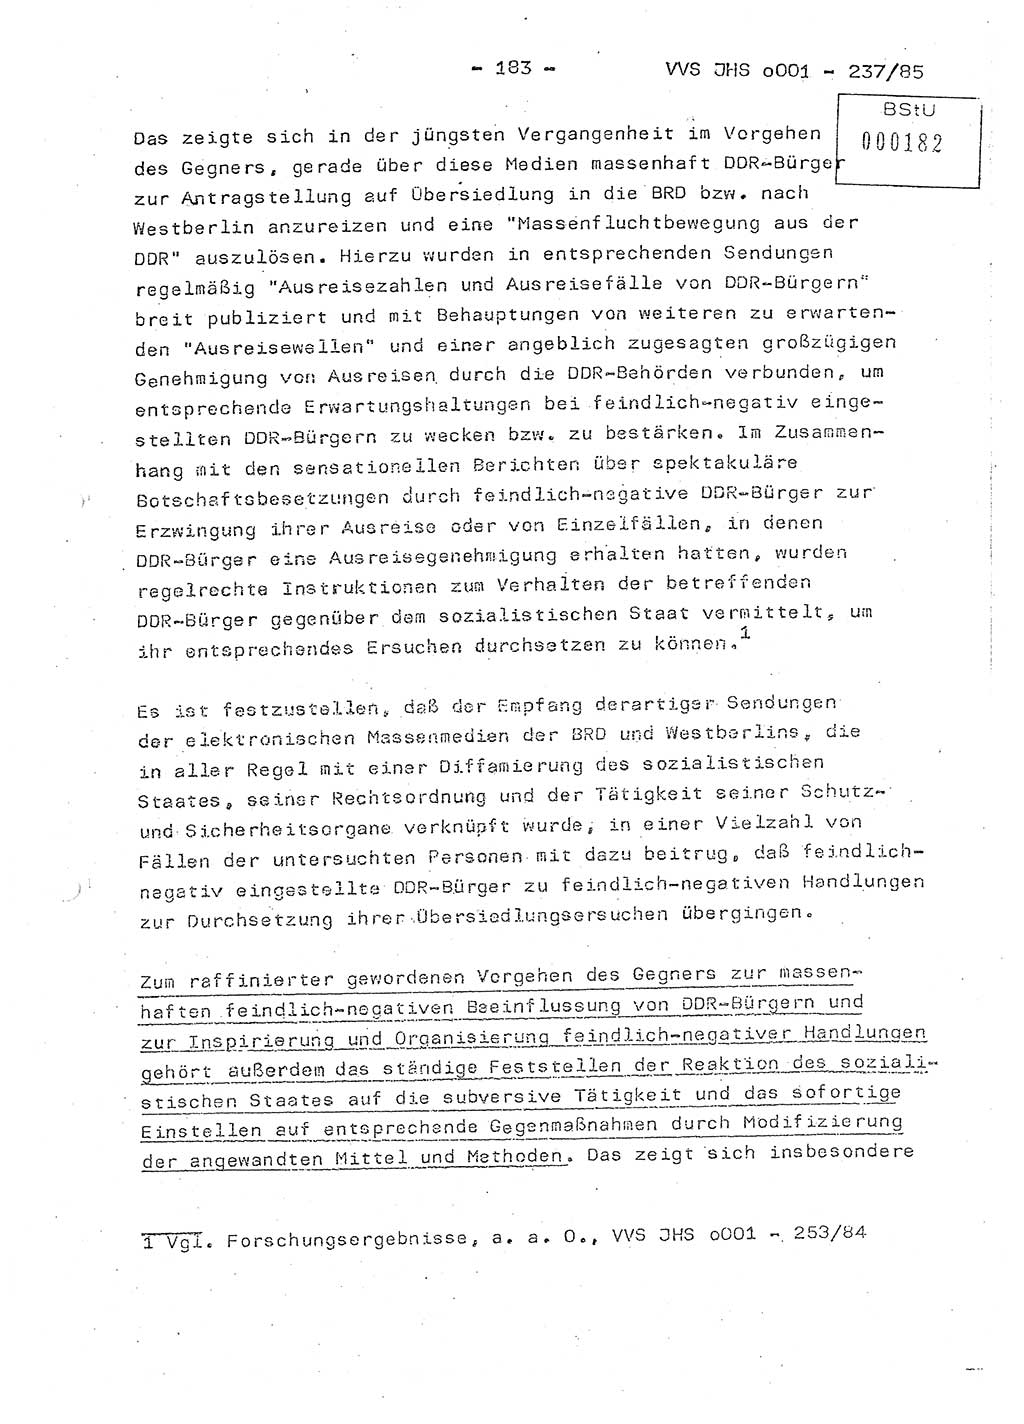 Dissertation Oberstleutnant Peter Jakulski (JHS), Oberstleutnat Christian Rudolph (HA Ⅸ), Major Horst Böttger (ZMD), Major Wolfgang Grüneberg (JHS), Major Albert Meutsch (JHS), Ministerium für Staatssicherheit (MfS) [Deutsche Demokratische Republik (DDR)], Juristische Hochschule (JHS), Vertrauliche Verschlußsache (VVS) o001-237/85, Potsdam 1985, Seite 183 (Diss. MfS DDR JHS VVS o001-237/85 1985, S. 183)